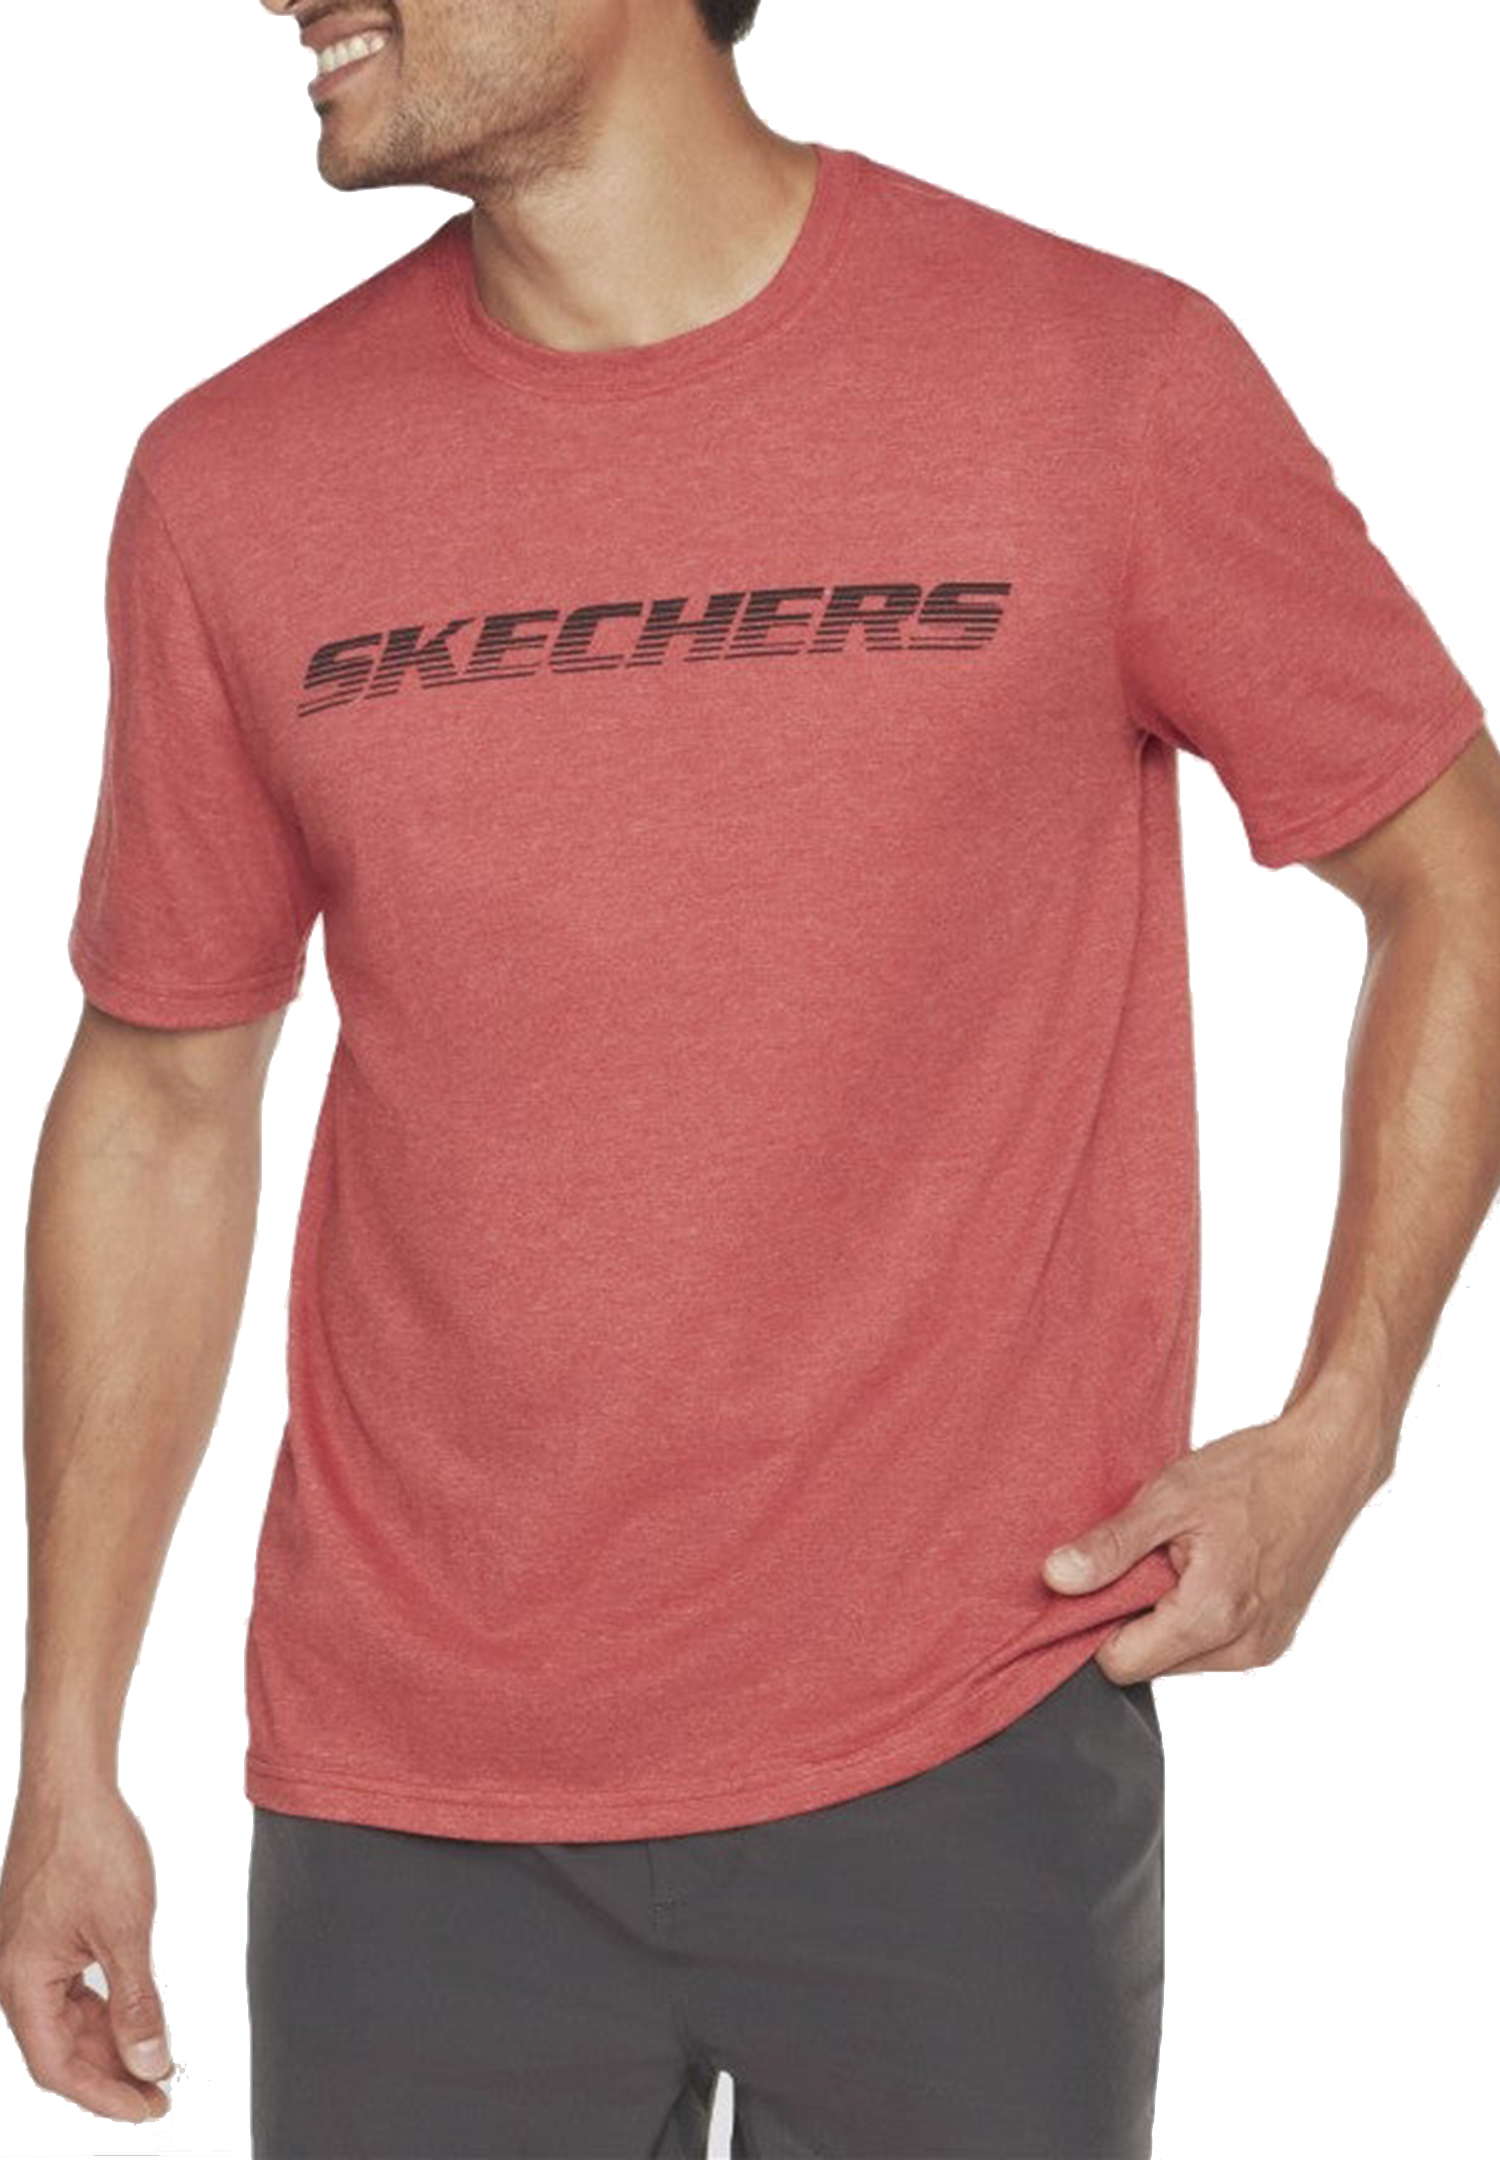 Skechers MEN'S MOTION TEE Shirt Herren T-Shirt MTS367 600 RED rot